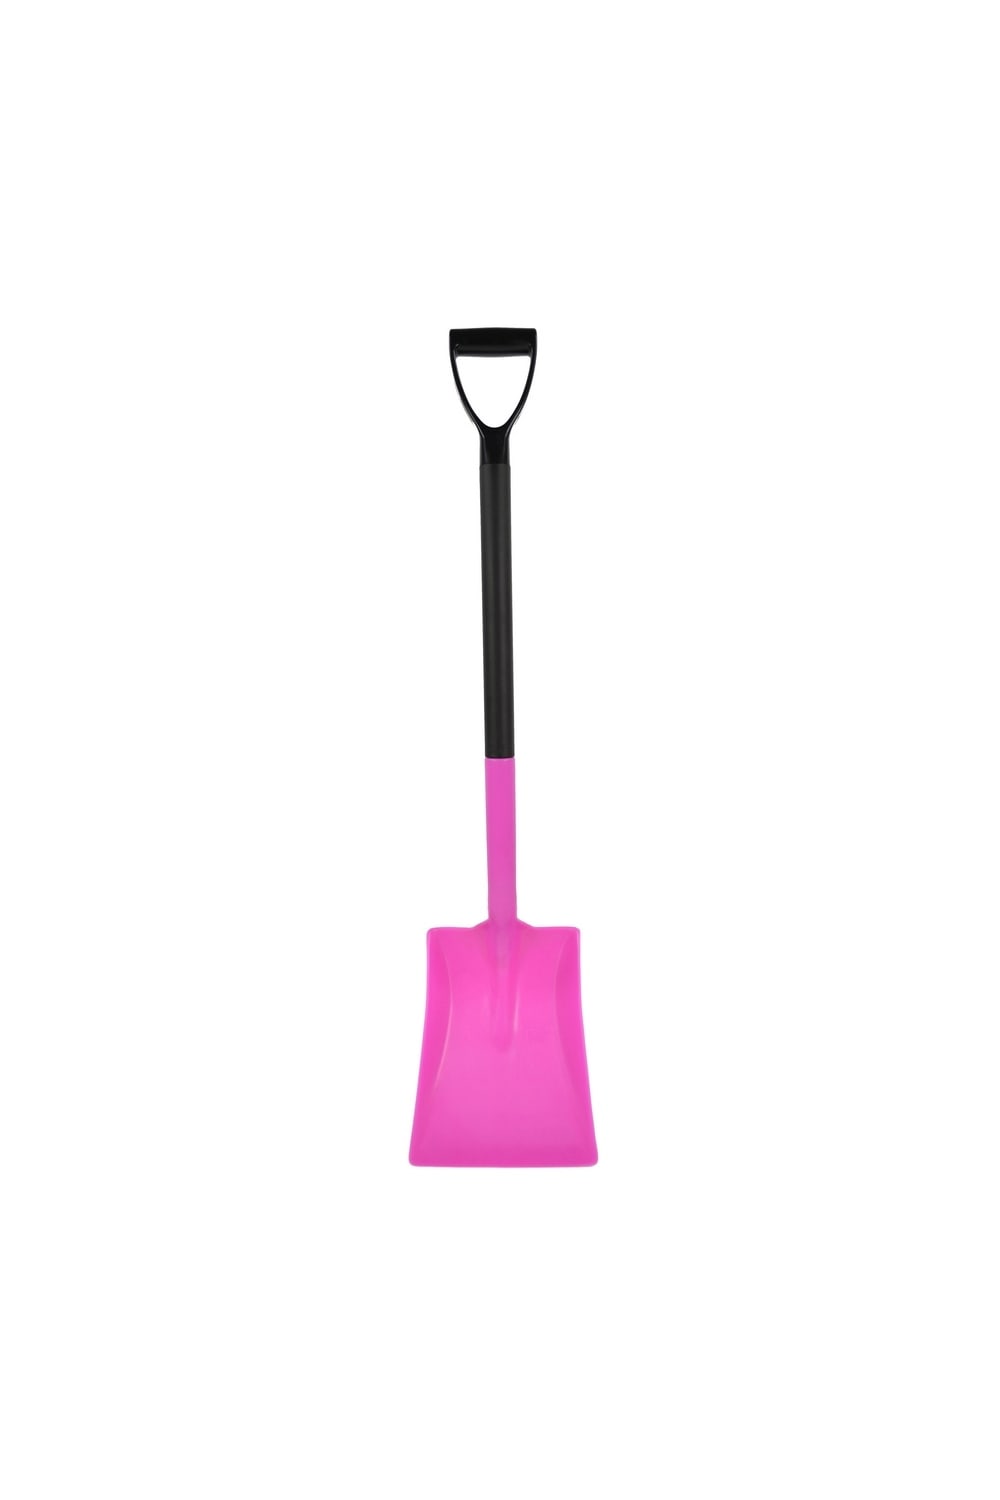 Harold Moore Ultra-Light Shovel (Pink) (3 foot)